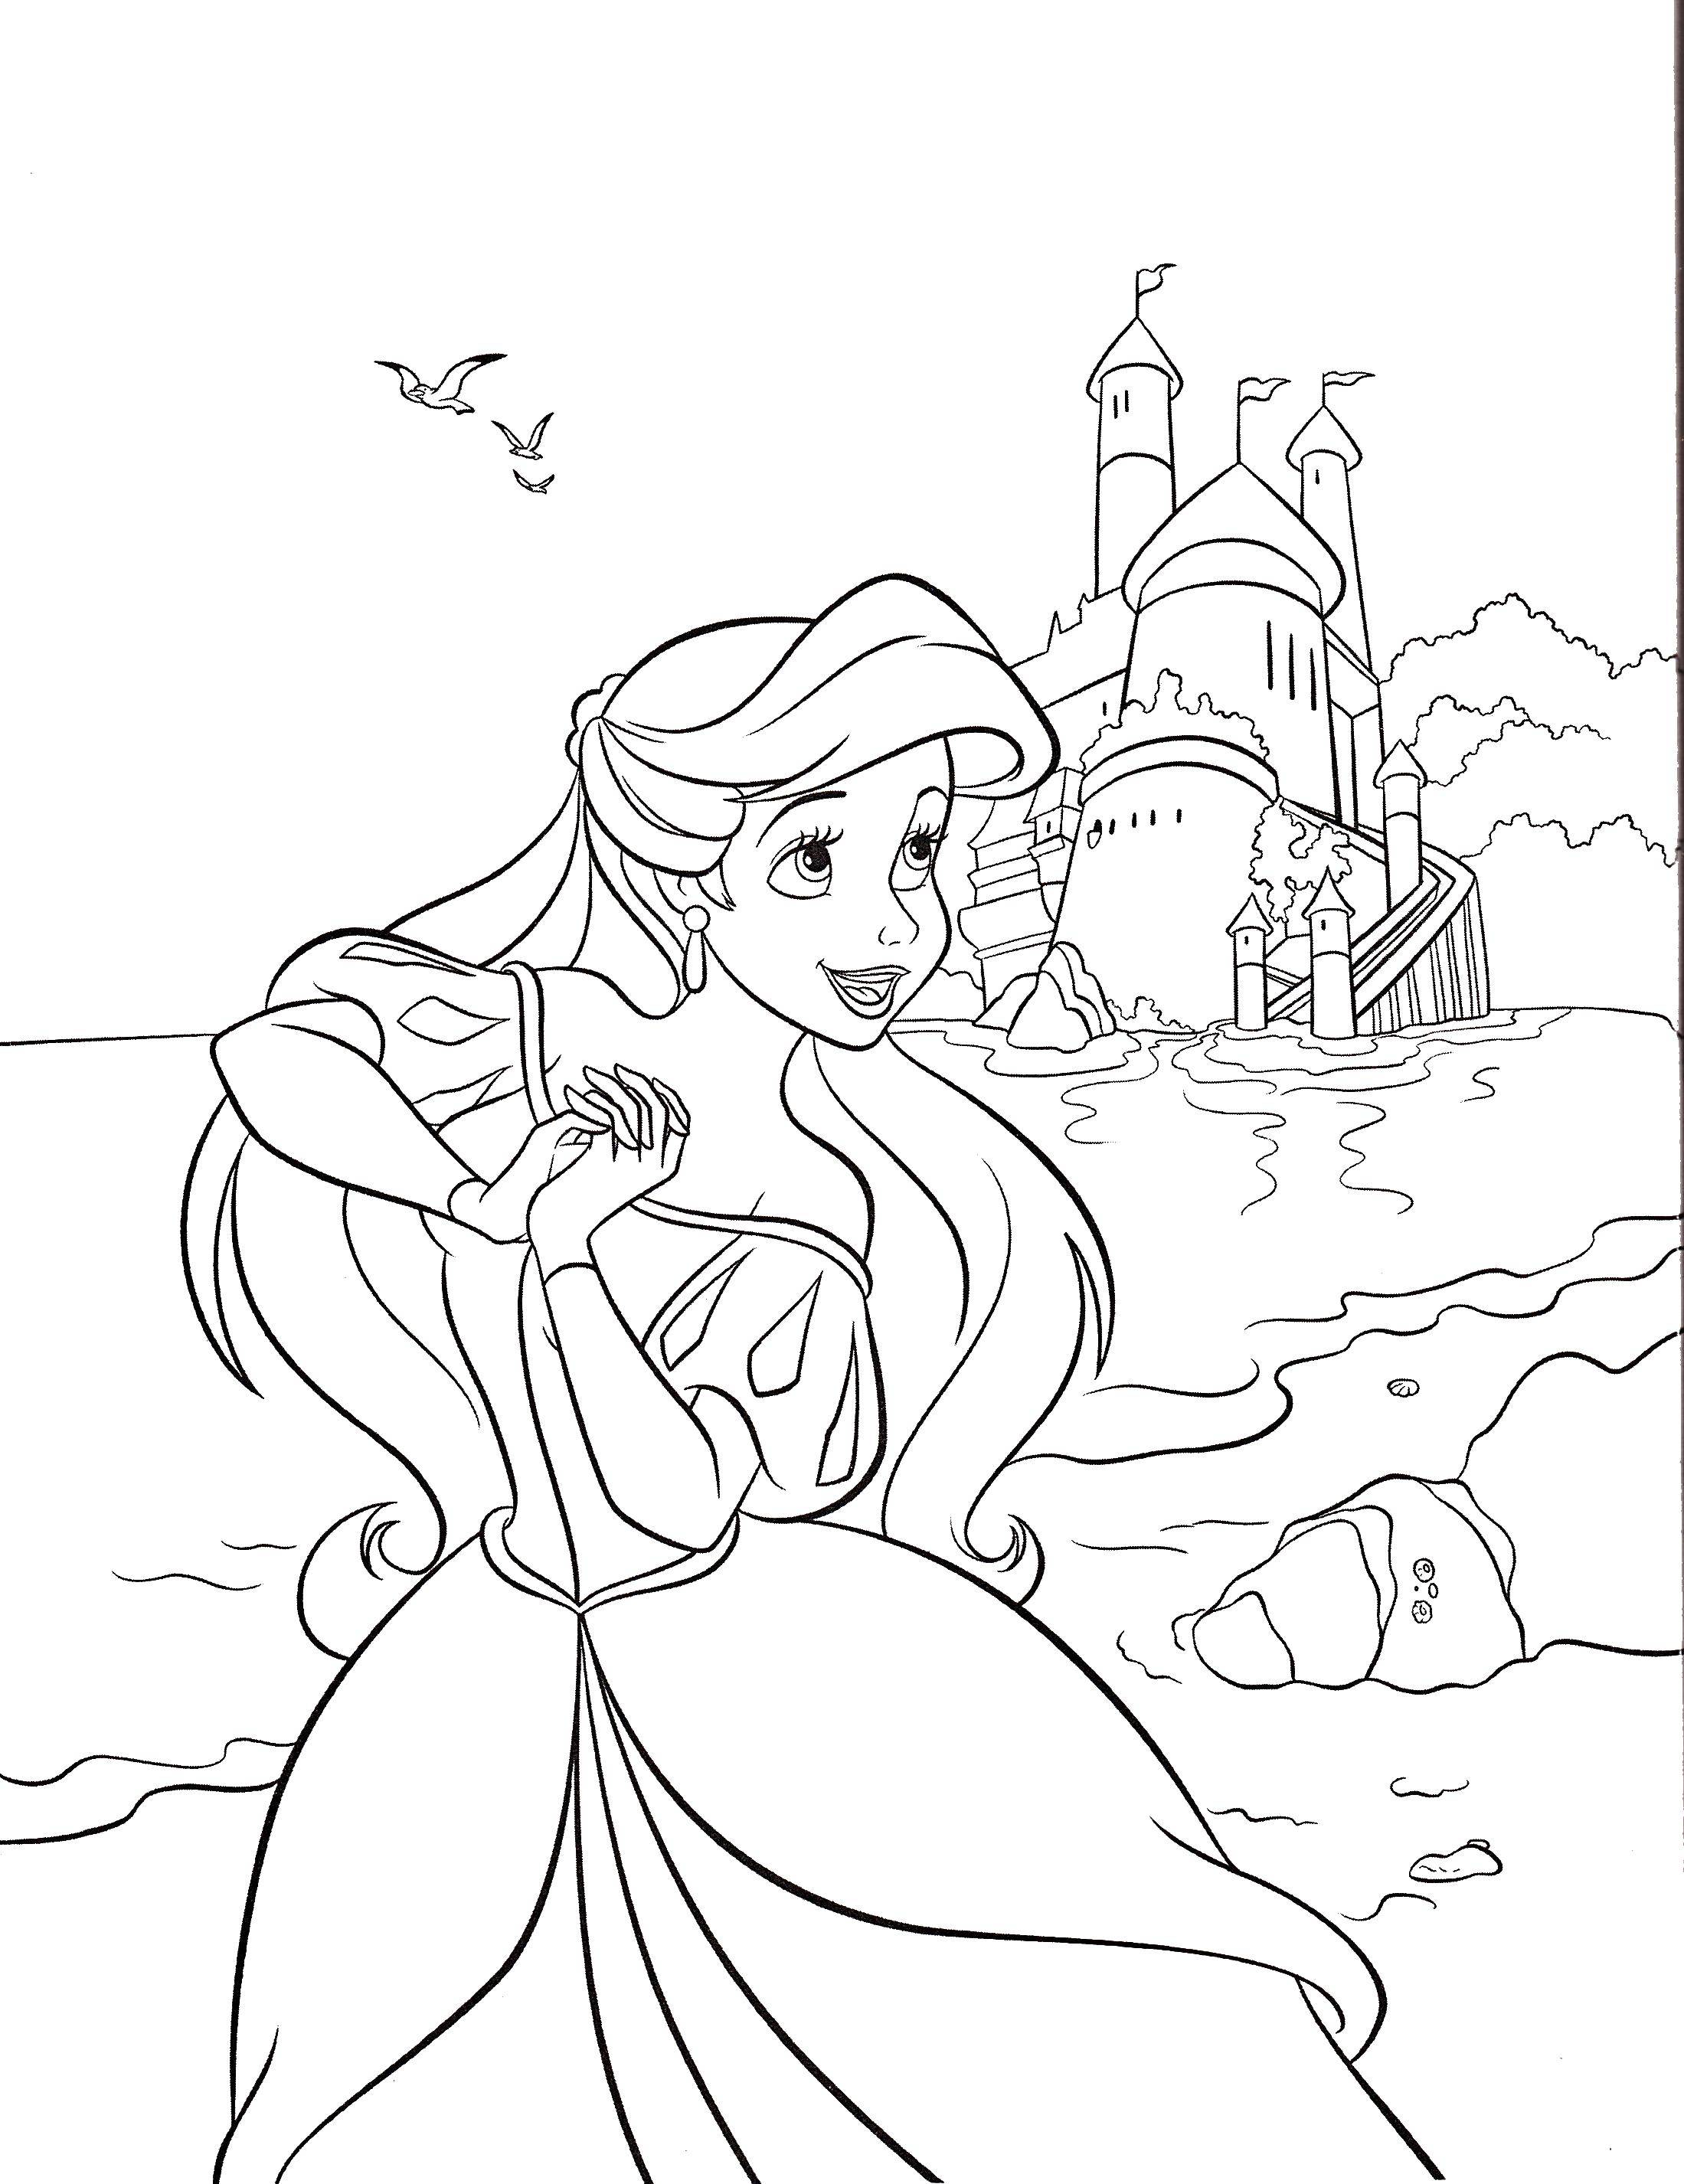 Coloring Ariel and castle. Category Princess. Tags:  Princess, Ariel, castle.